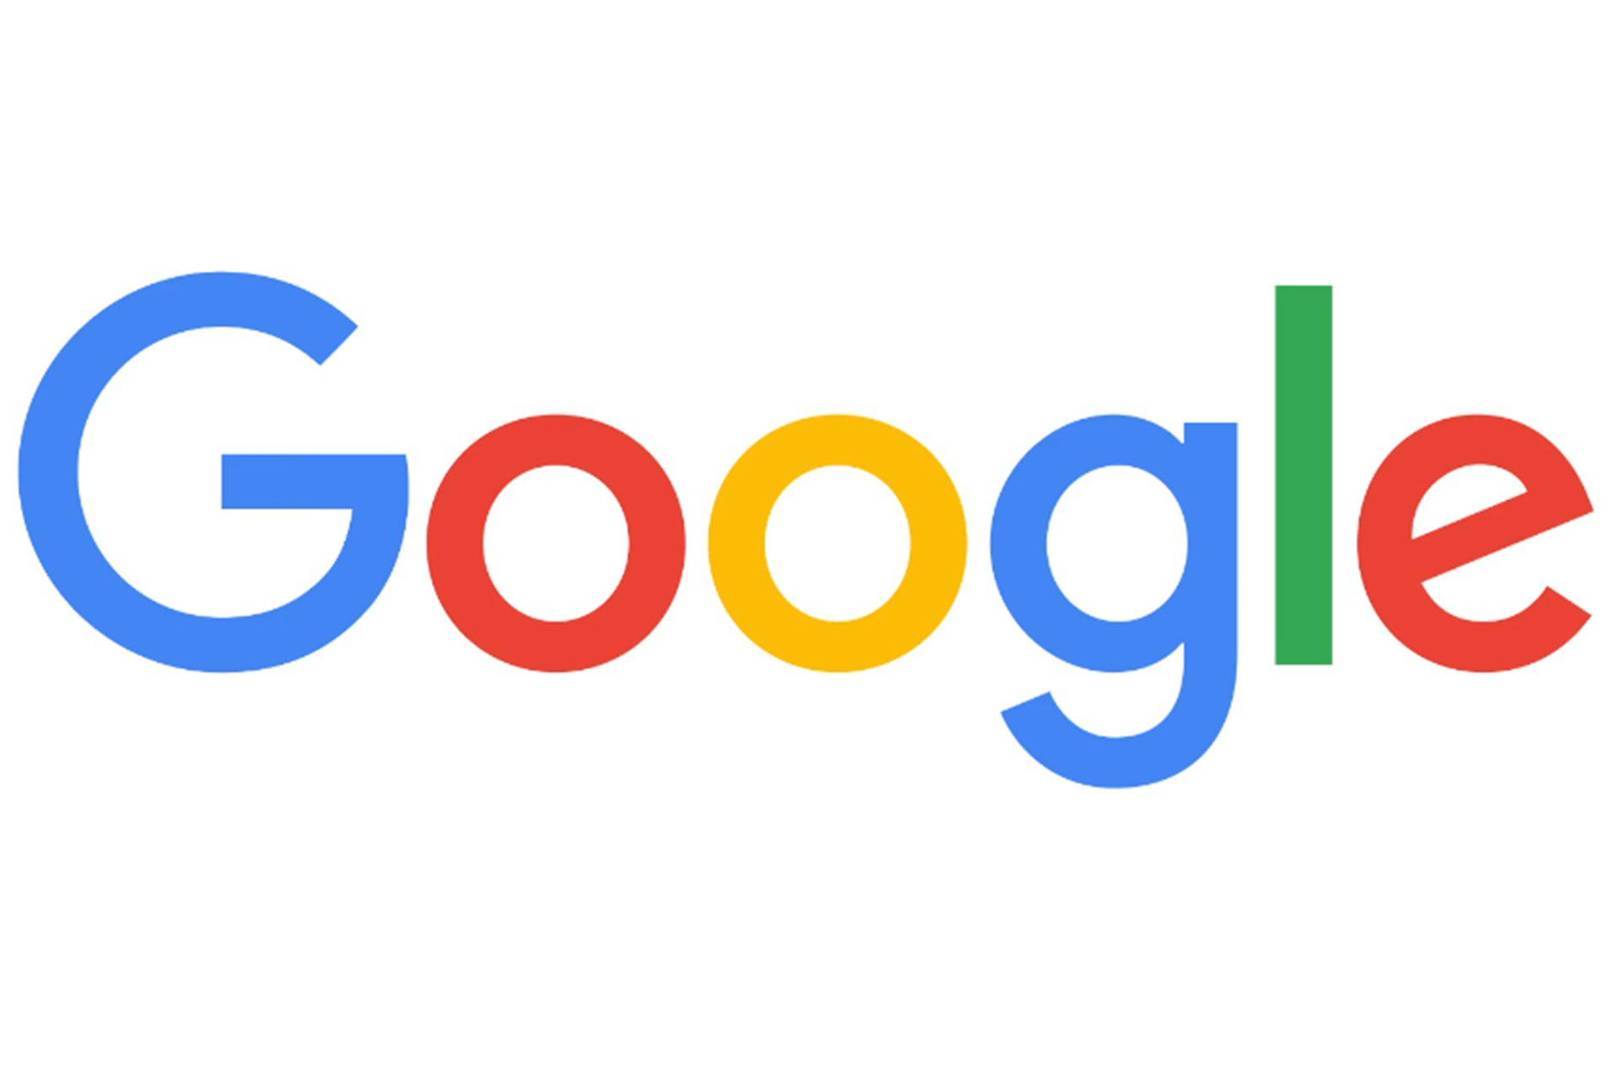 谷歌Logo演变图片